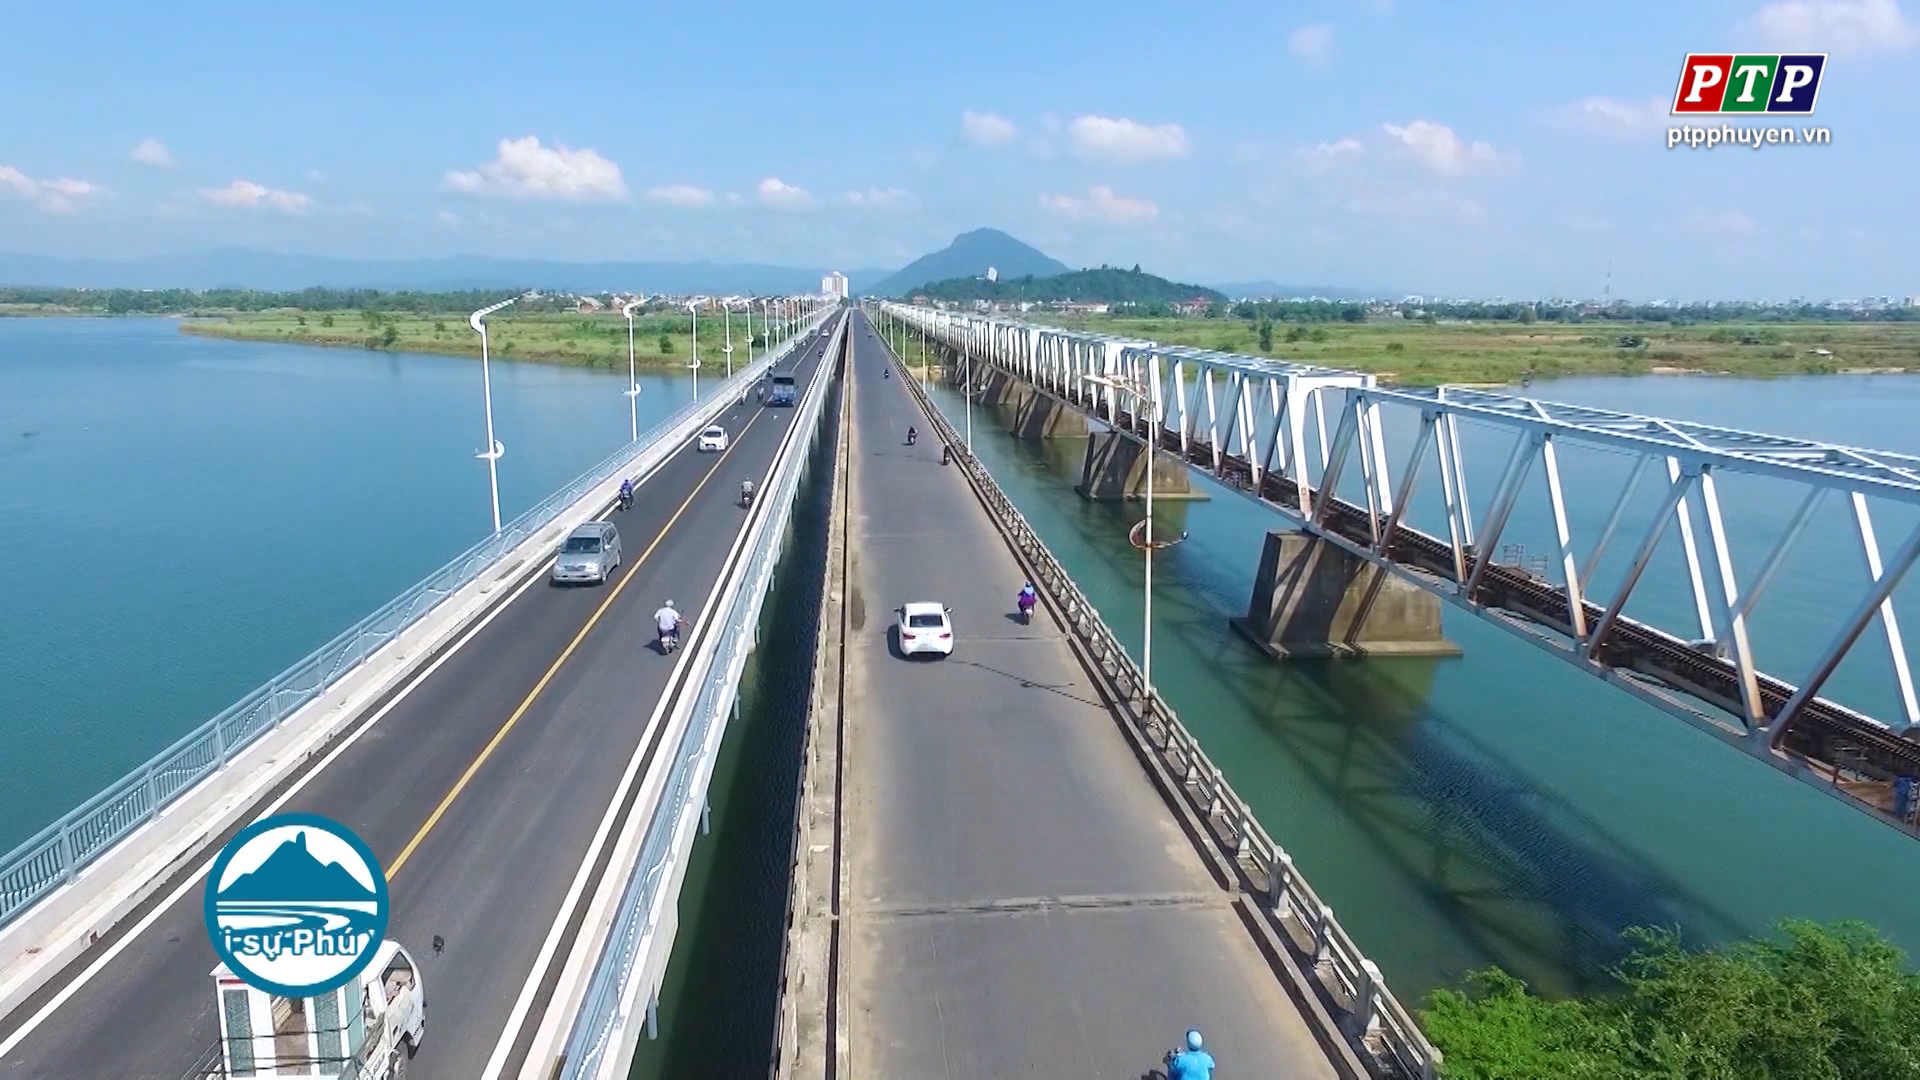 Cầu Đà Rằng - Phú Yên